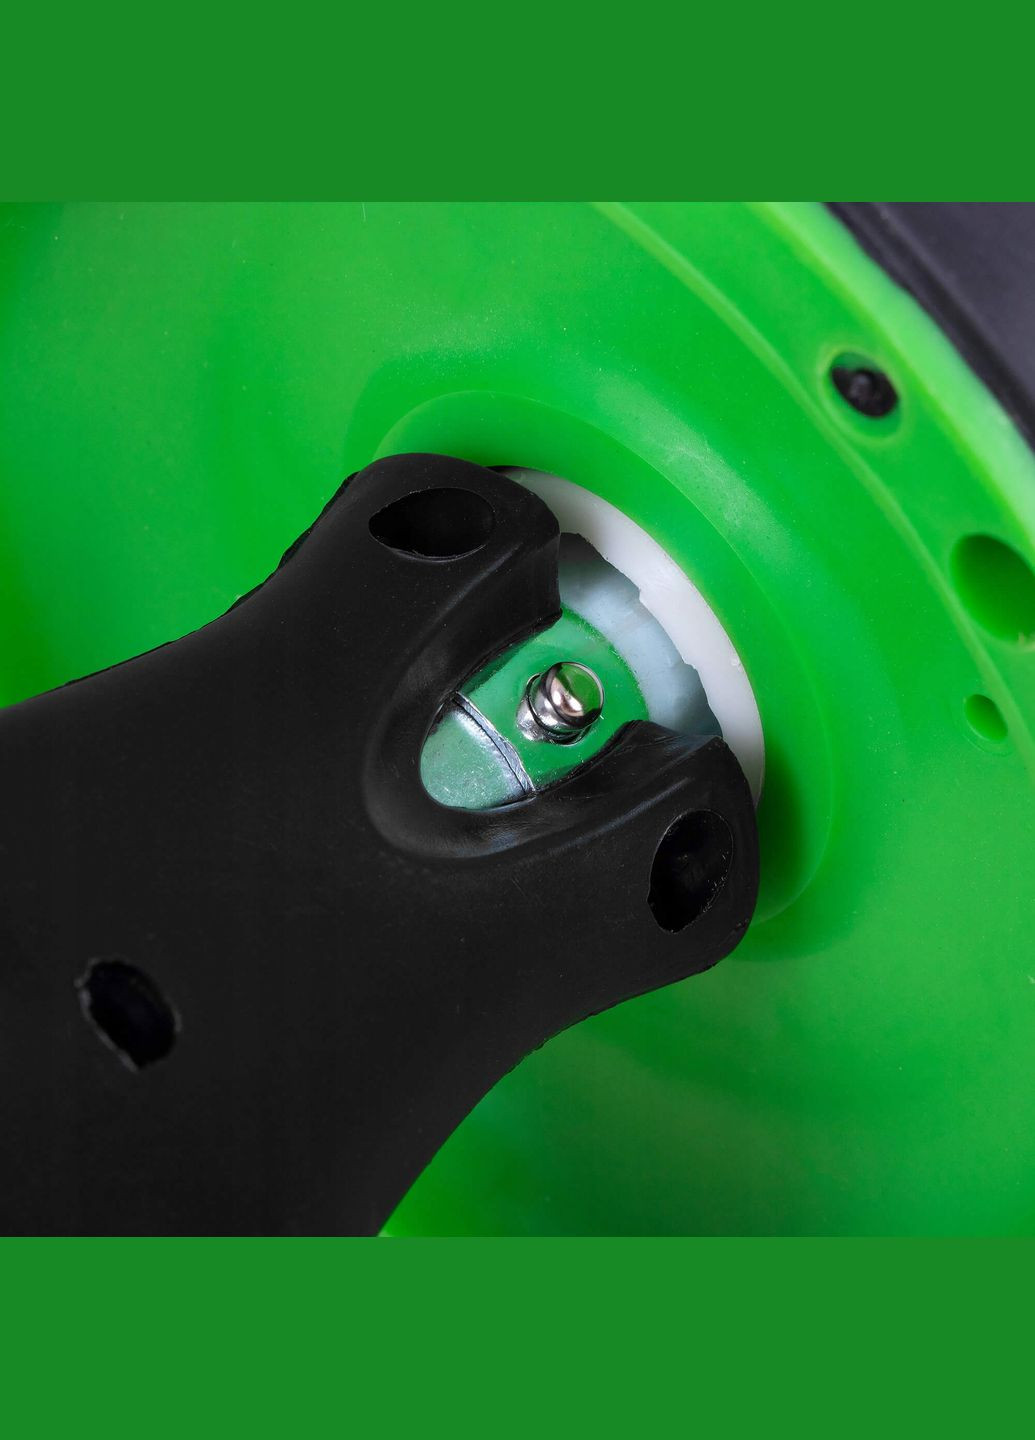 Ролик (колесо) для пресса с возвратным механизмом AB Wheel Black/Green Springos fa5010 (275653591)